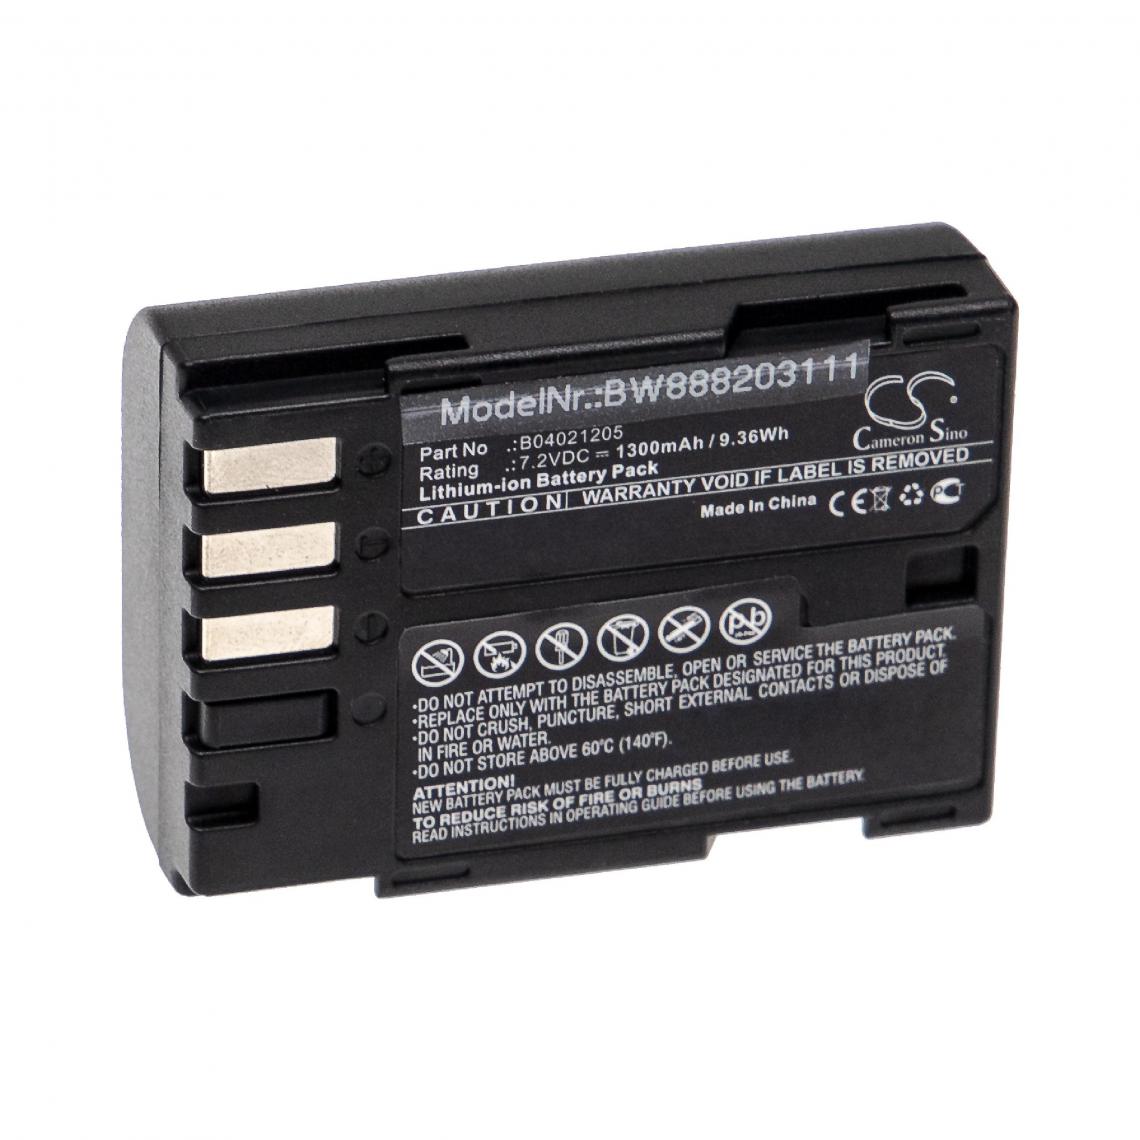 Vhbw - vhbw Batterie remplacement pour Siemens B04021205 pour appareil médical (1300mAh, 7,2V, Li-ion) - Piles spécifiques